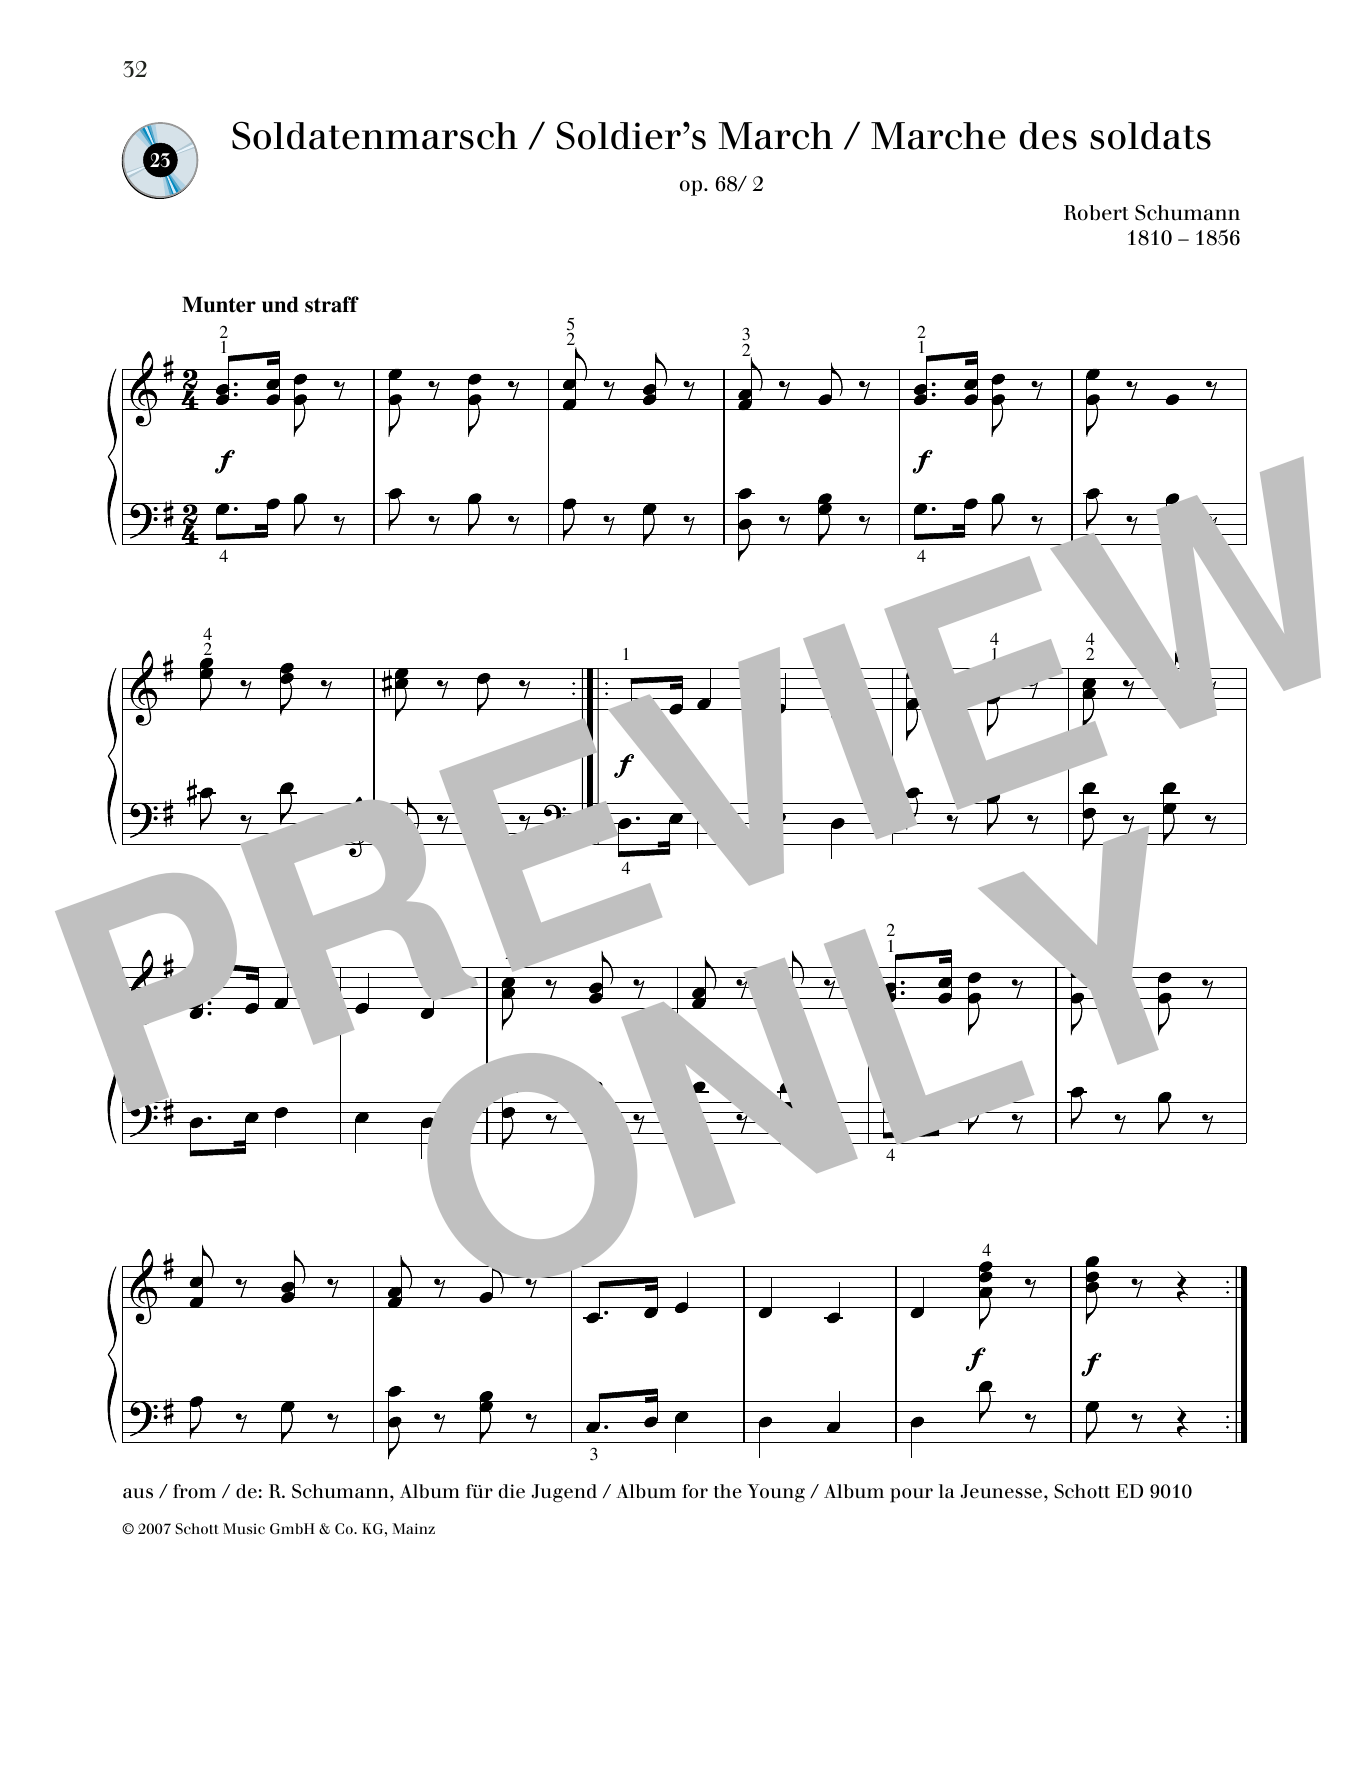 Download Robert Schumann Soldier's March Sheet Music